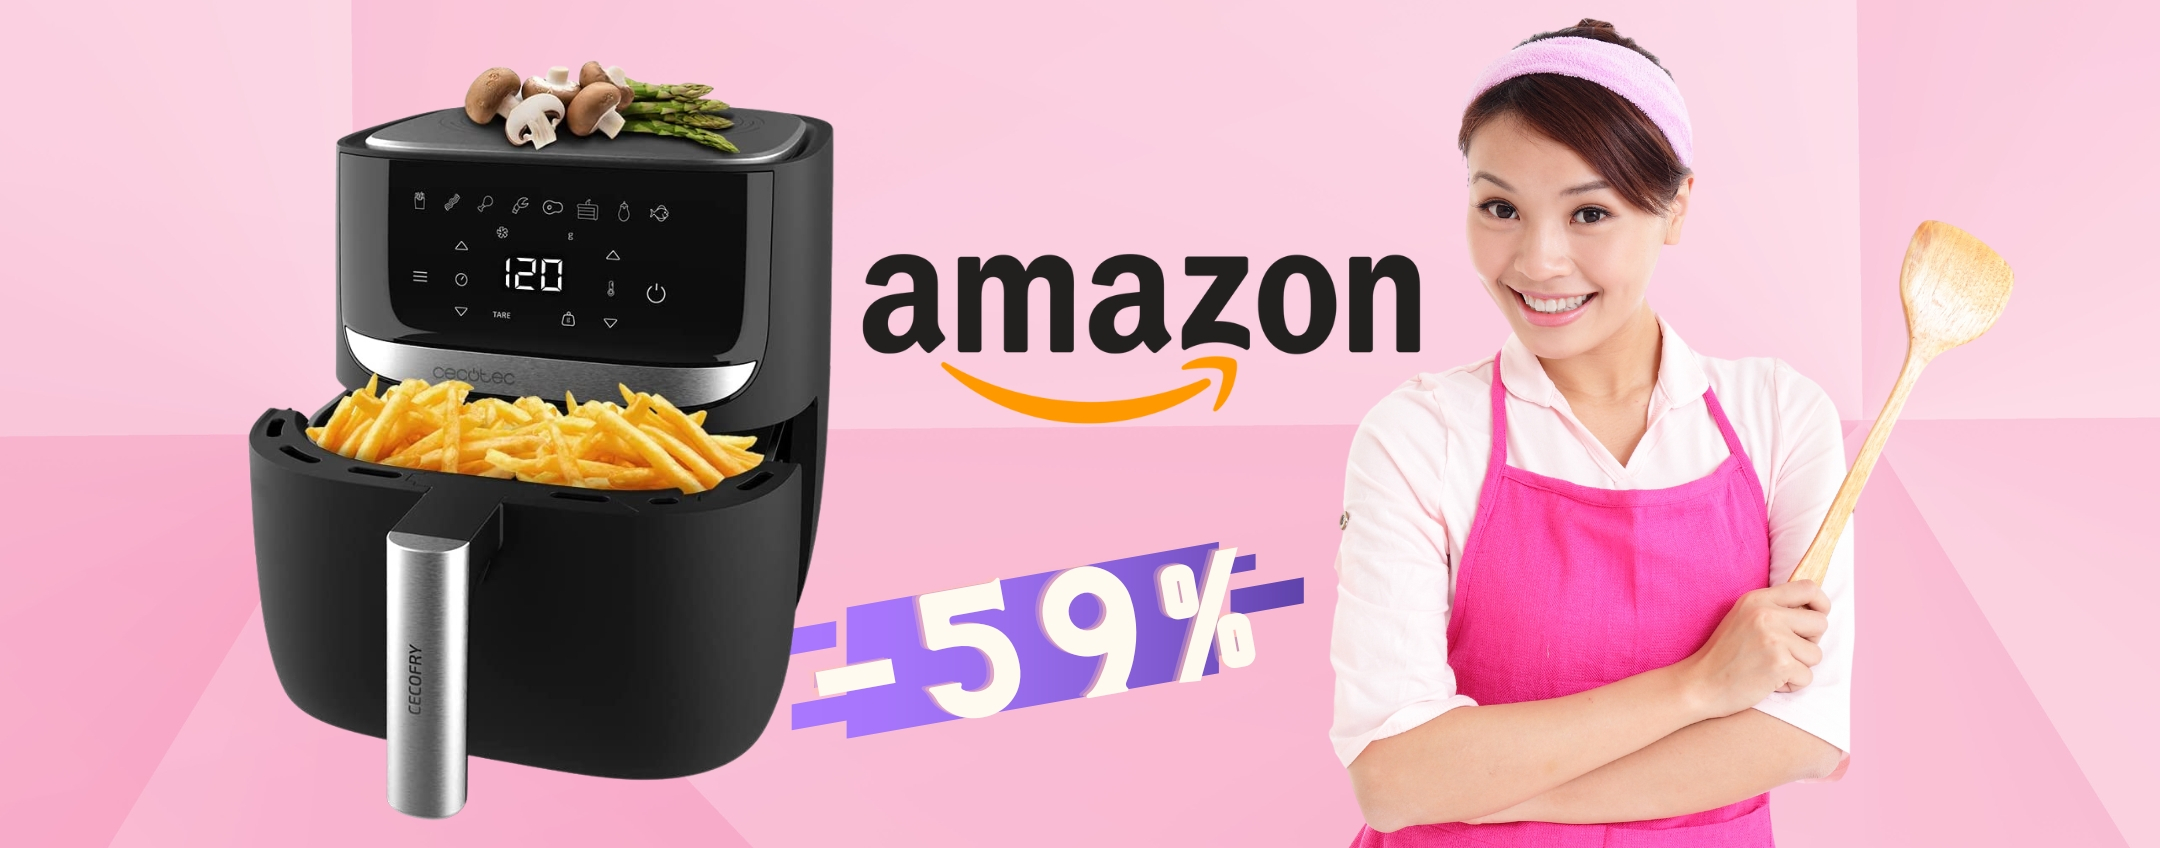 Friggitrice ad aria STUPENDA a prezzo WOW su Amazon (-59%)